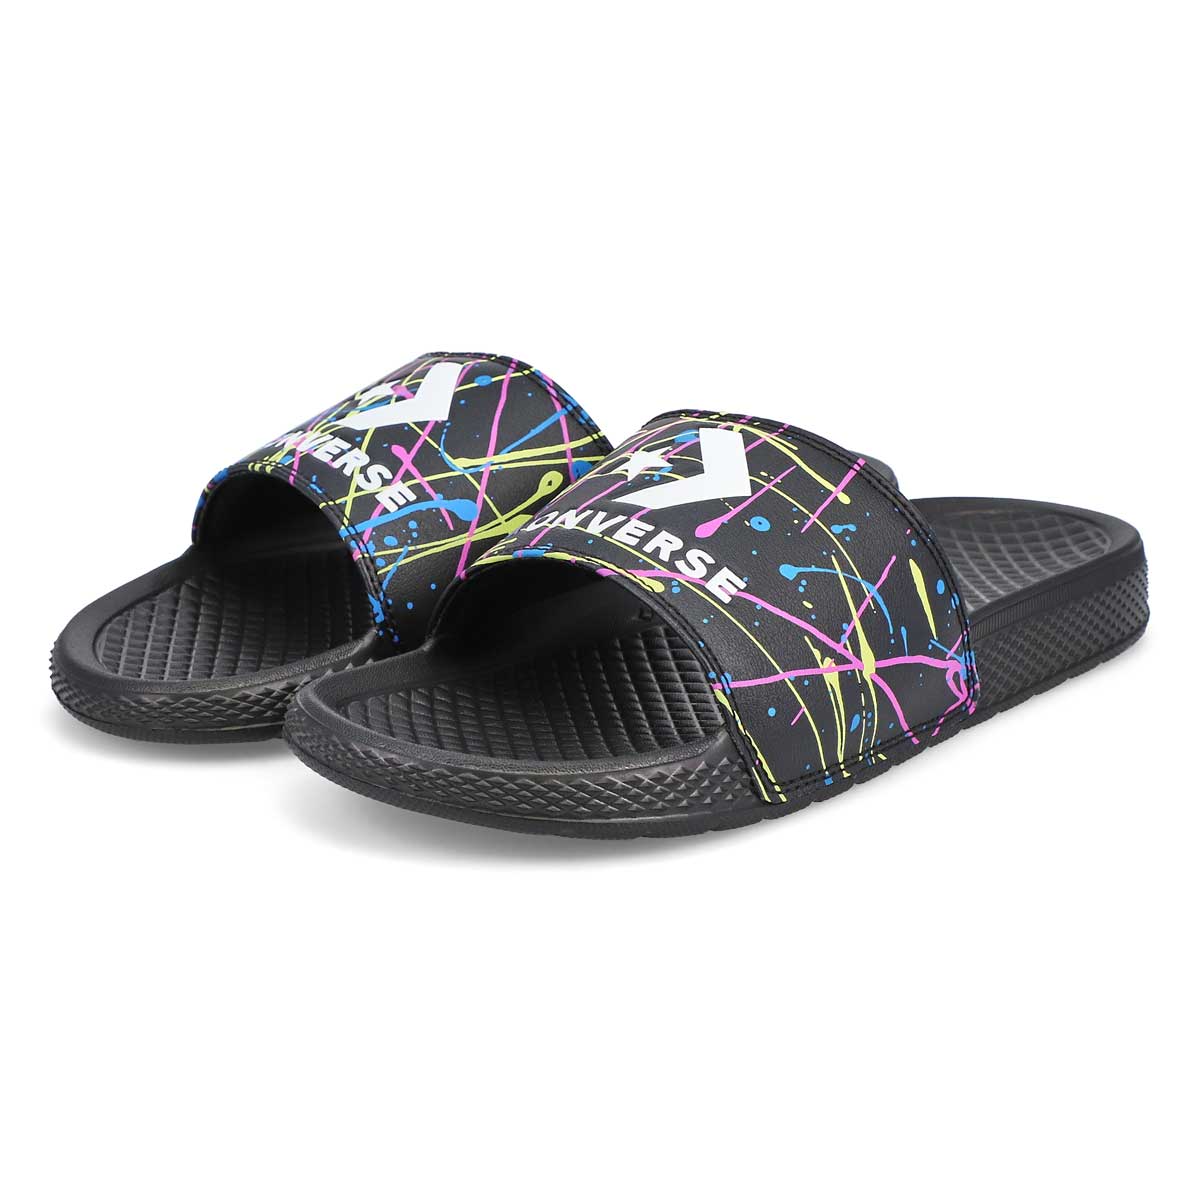 Men's All Star Splatter Slide Sandal - Black/Multi